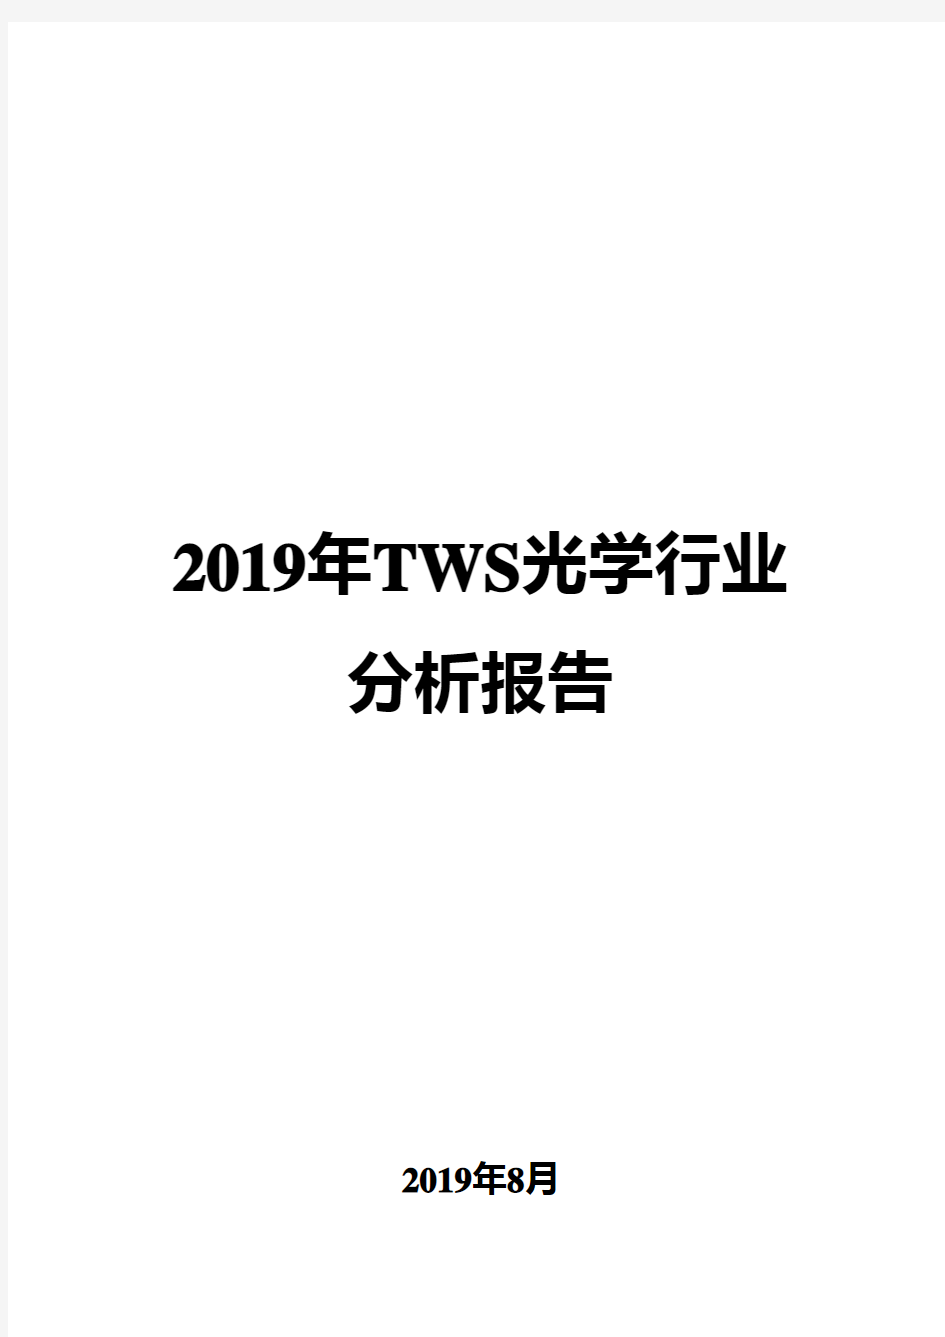 2019年TWS光学行业分析报告